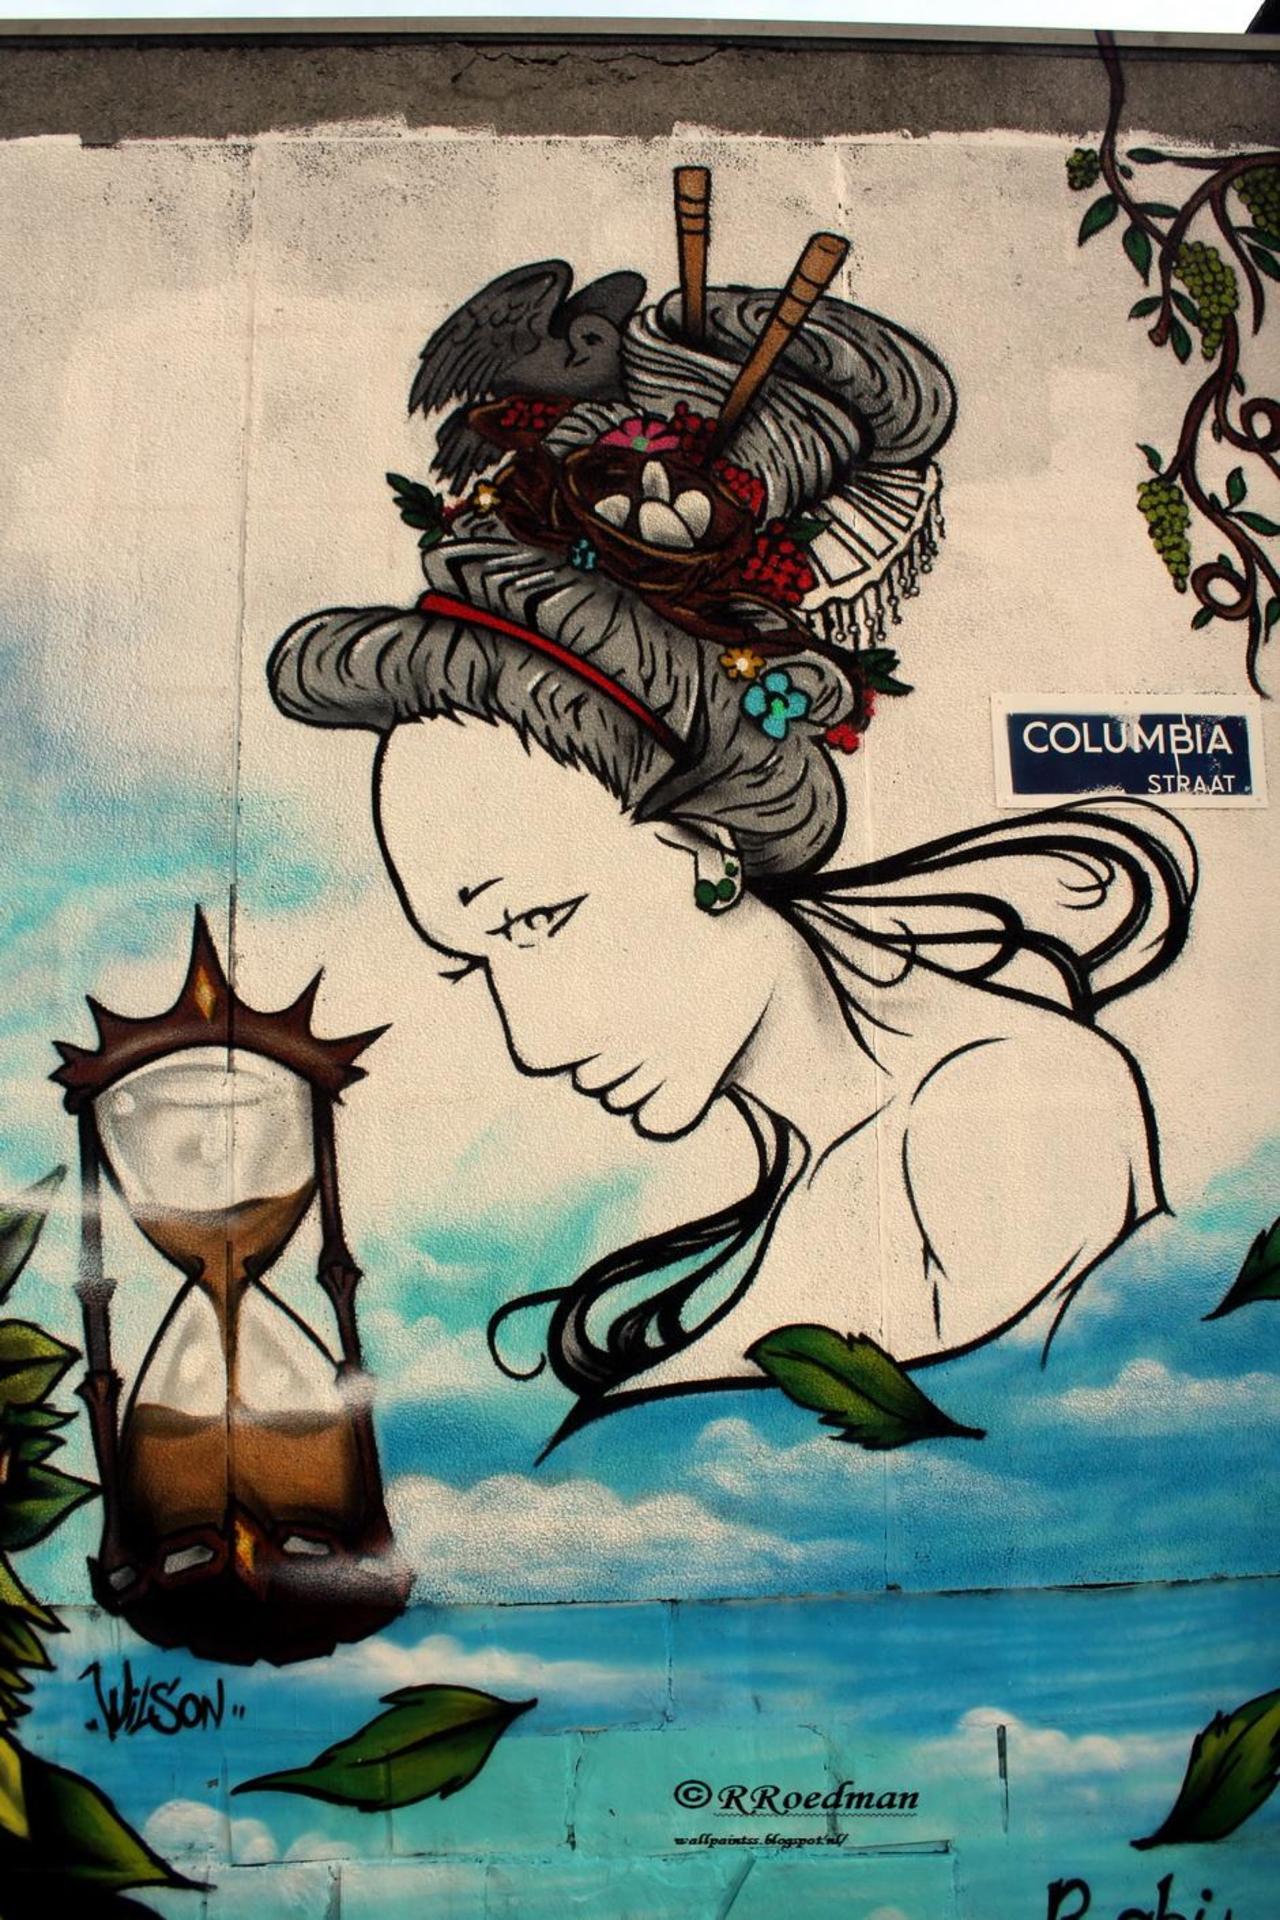 “@RRoedman: #streetart #graffiti #mural various artists in #Antwerp 5 pics at http://wallpaintss.blogspot.nl http://t.co/gf7SrWpOpV”